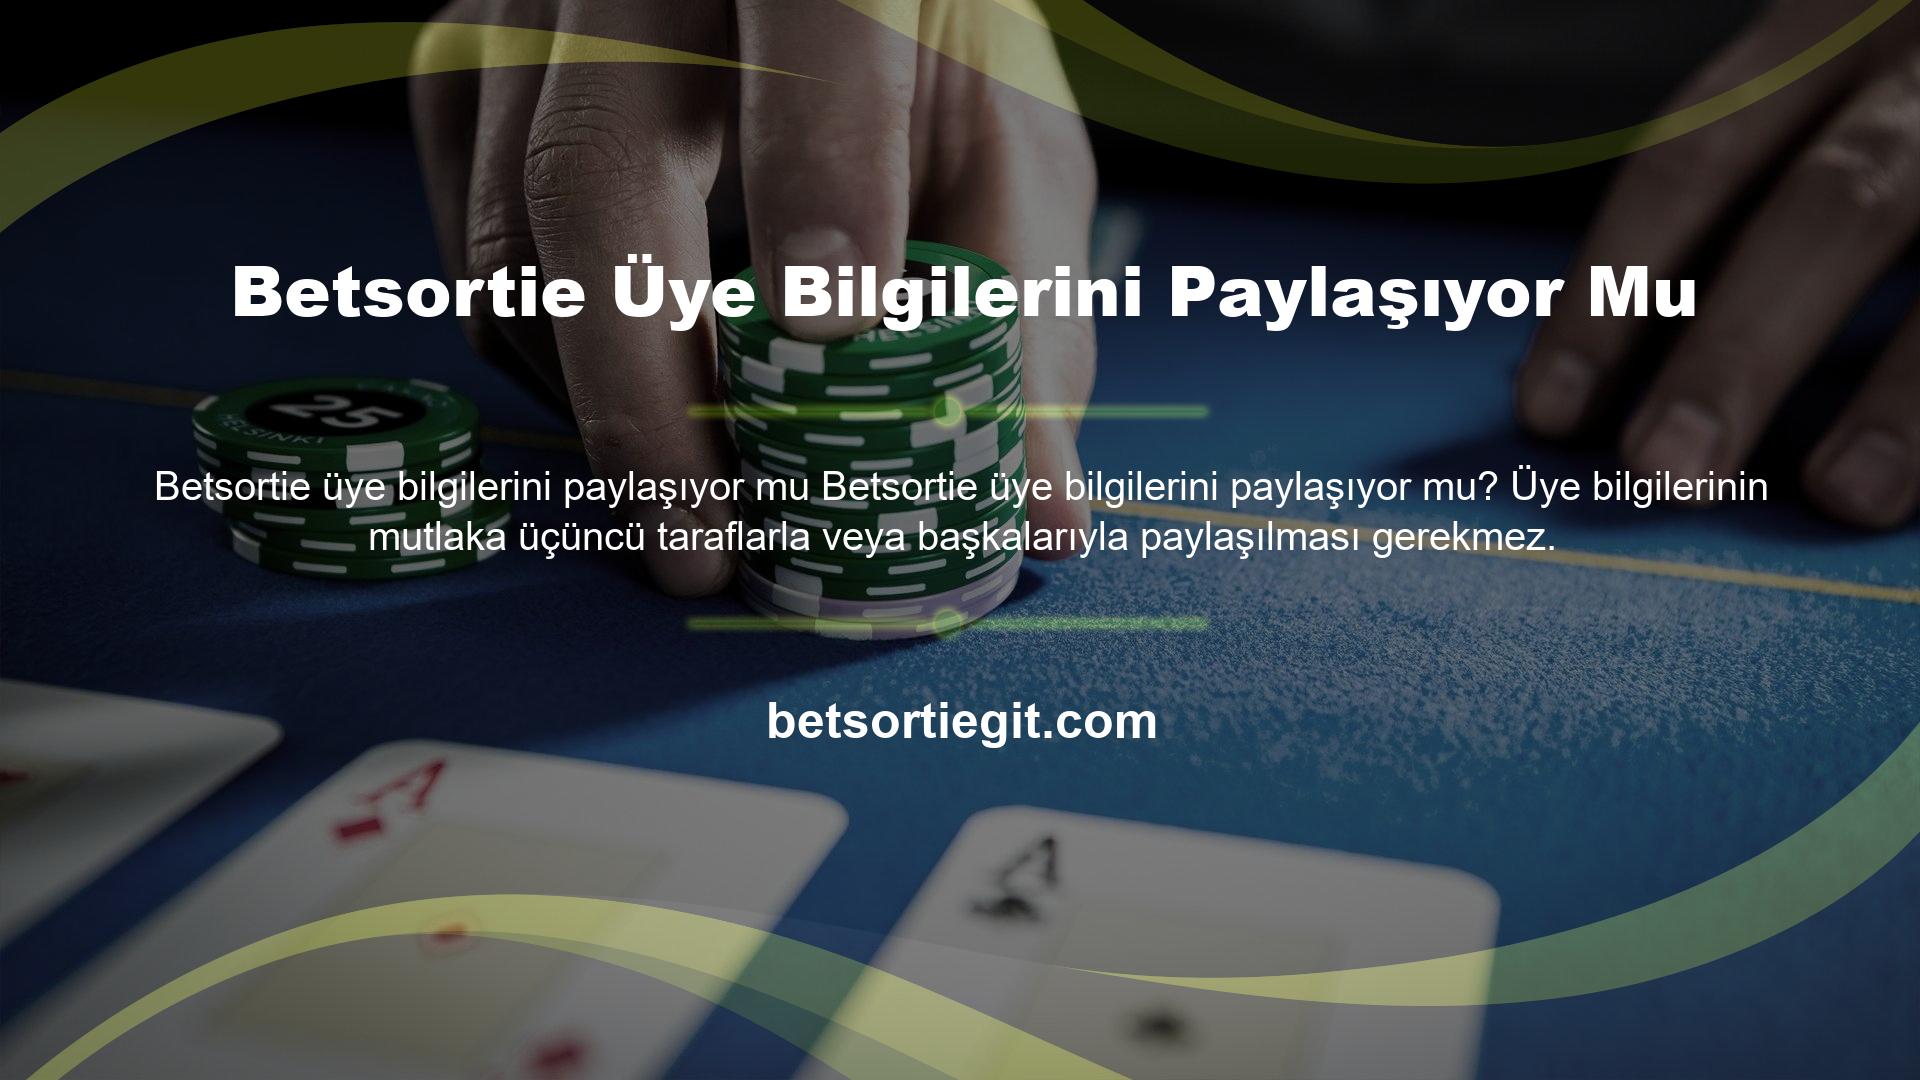 Casino sektörünün güvenilir adresi, kurumsal kimlik kullanarak güvenli formatta yayın yapan canlı bahis sitesi Betsortie olmaya devam ediyor